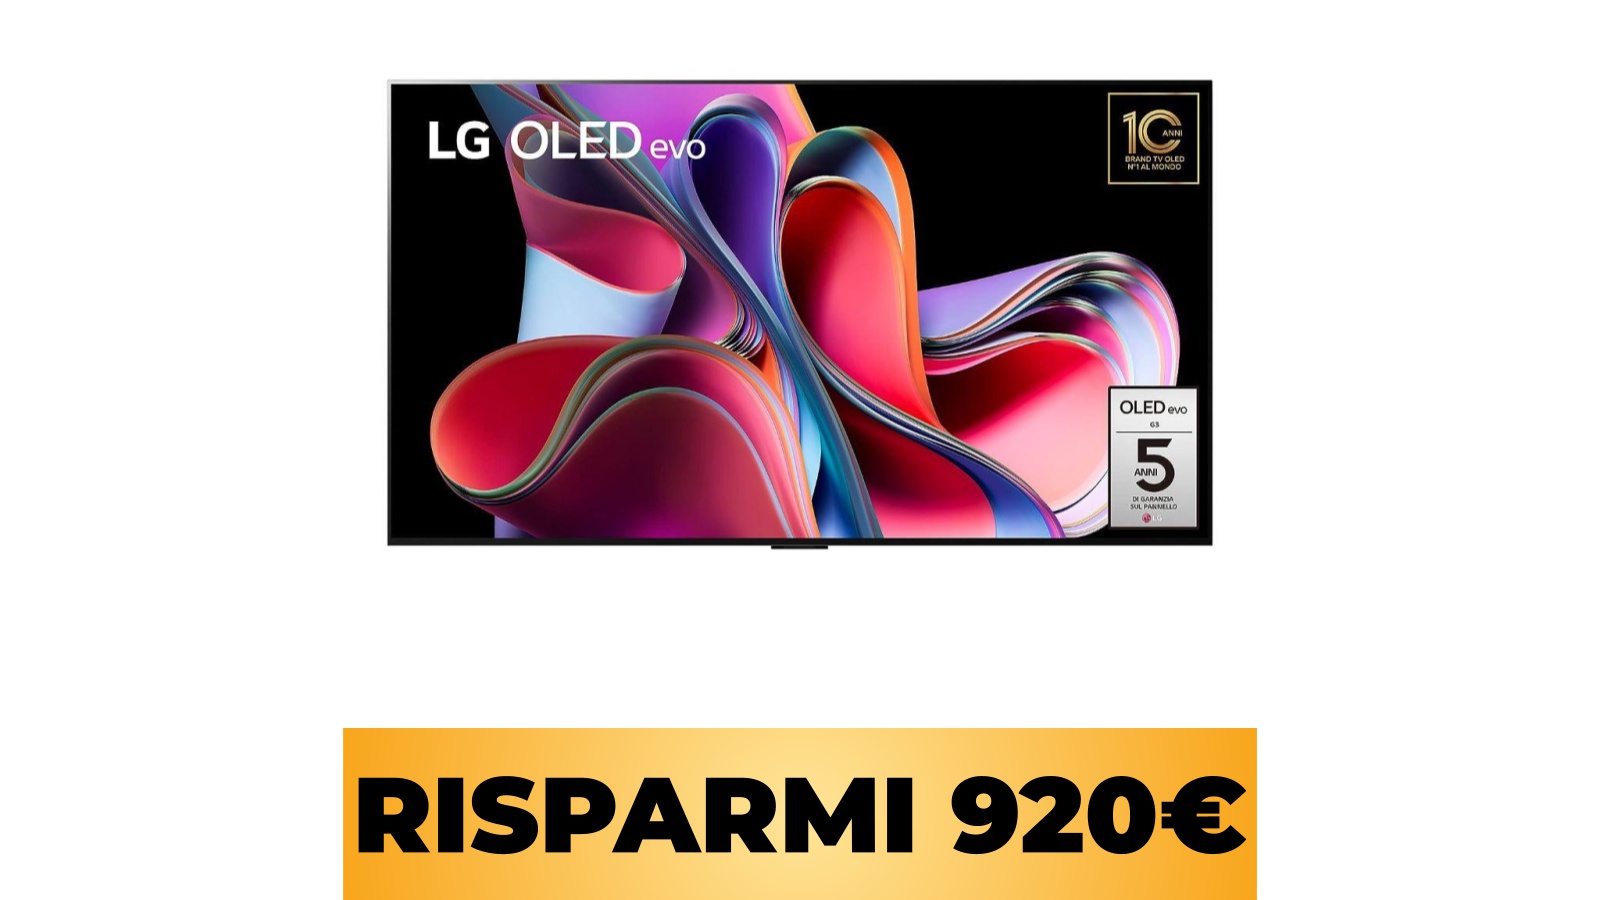 La smart TV LG OLED evo 55 pollici con HDMI 2.1 per VRR è al prezzo minimo storico tramite Amazon